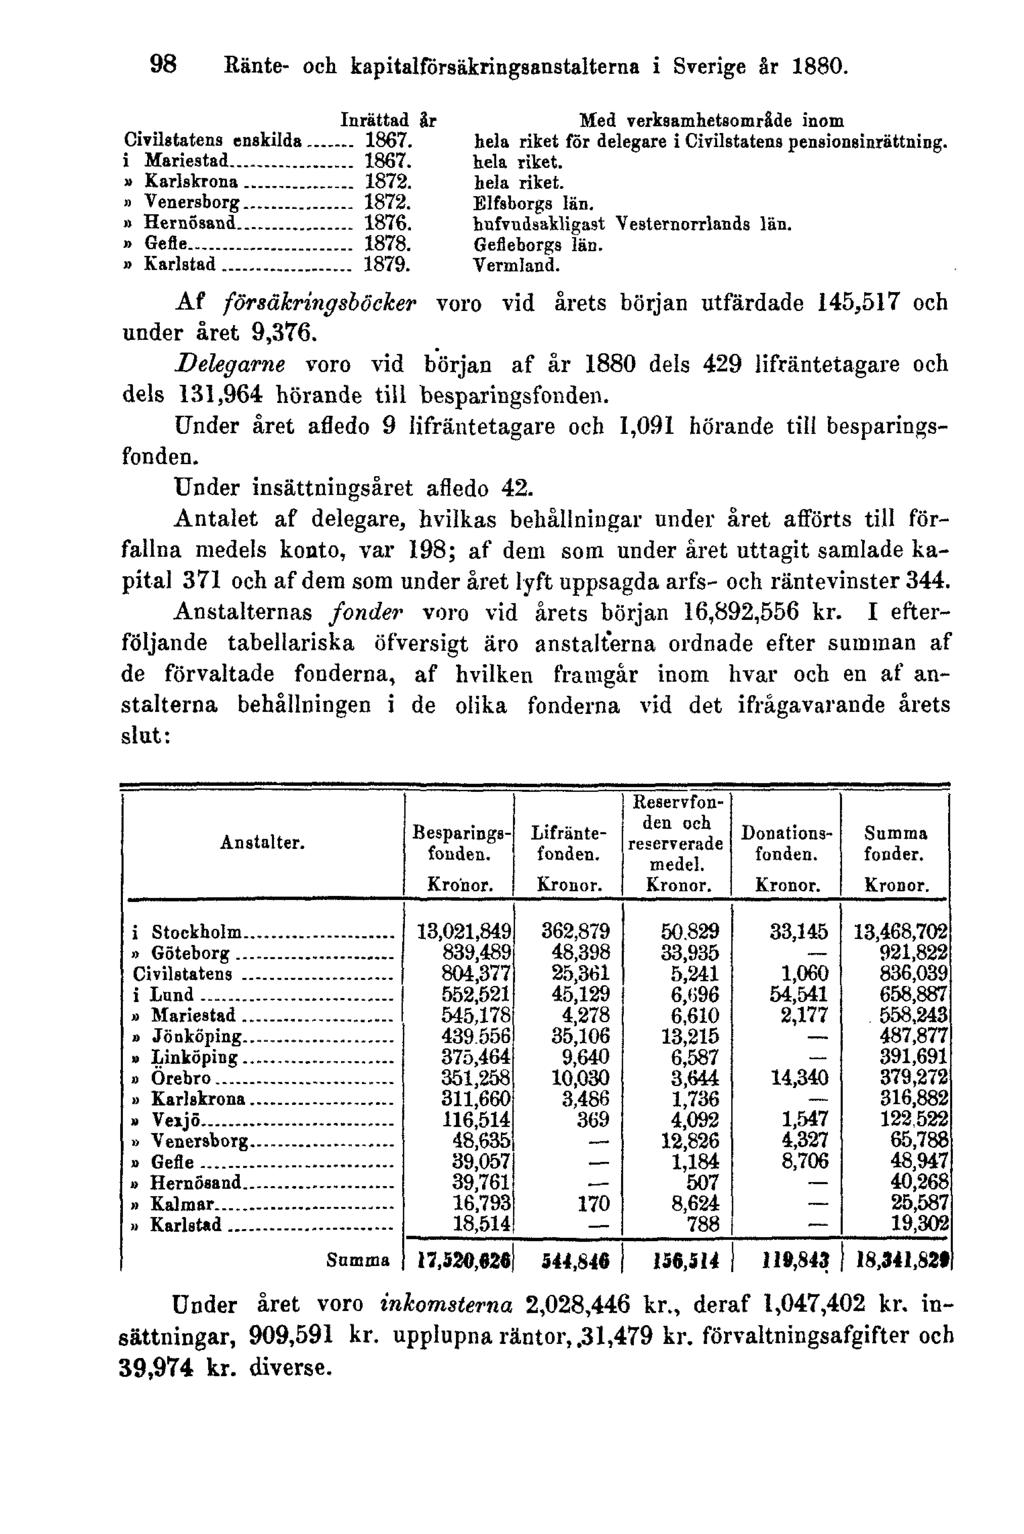 98 Ränte- och kapitalförsäkringsanstalterna i Sverige år 1880. Af försäkringsböcker voro vid årets början utfärdade 145,517 och under året 9,376.